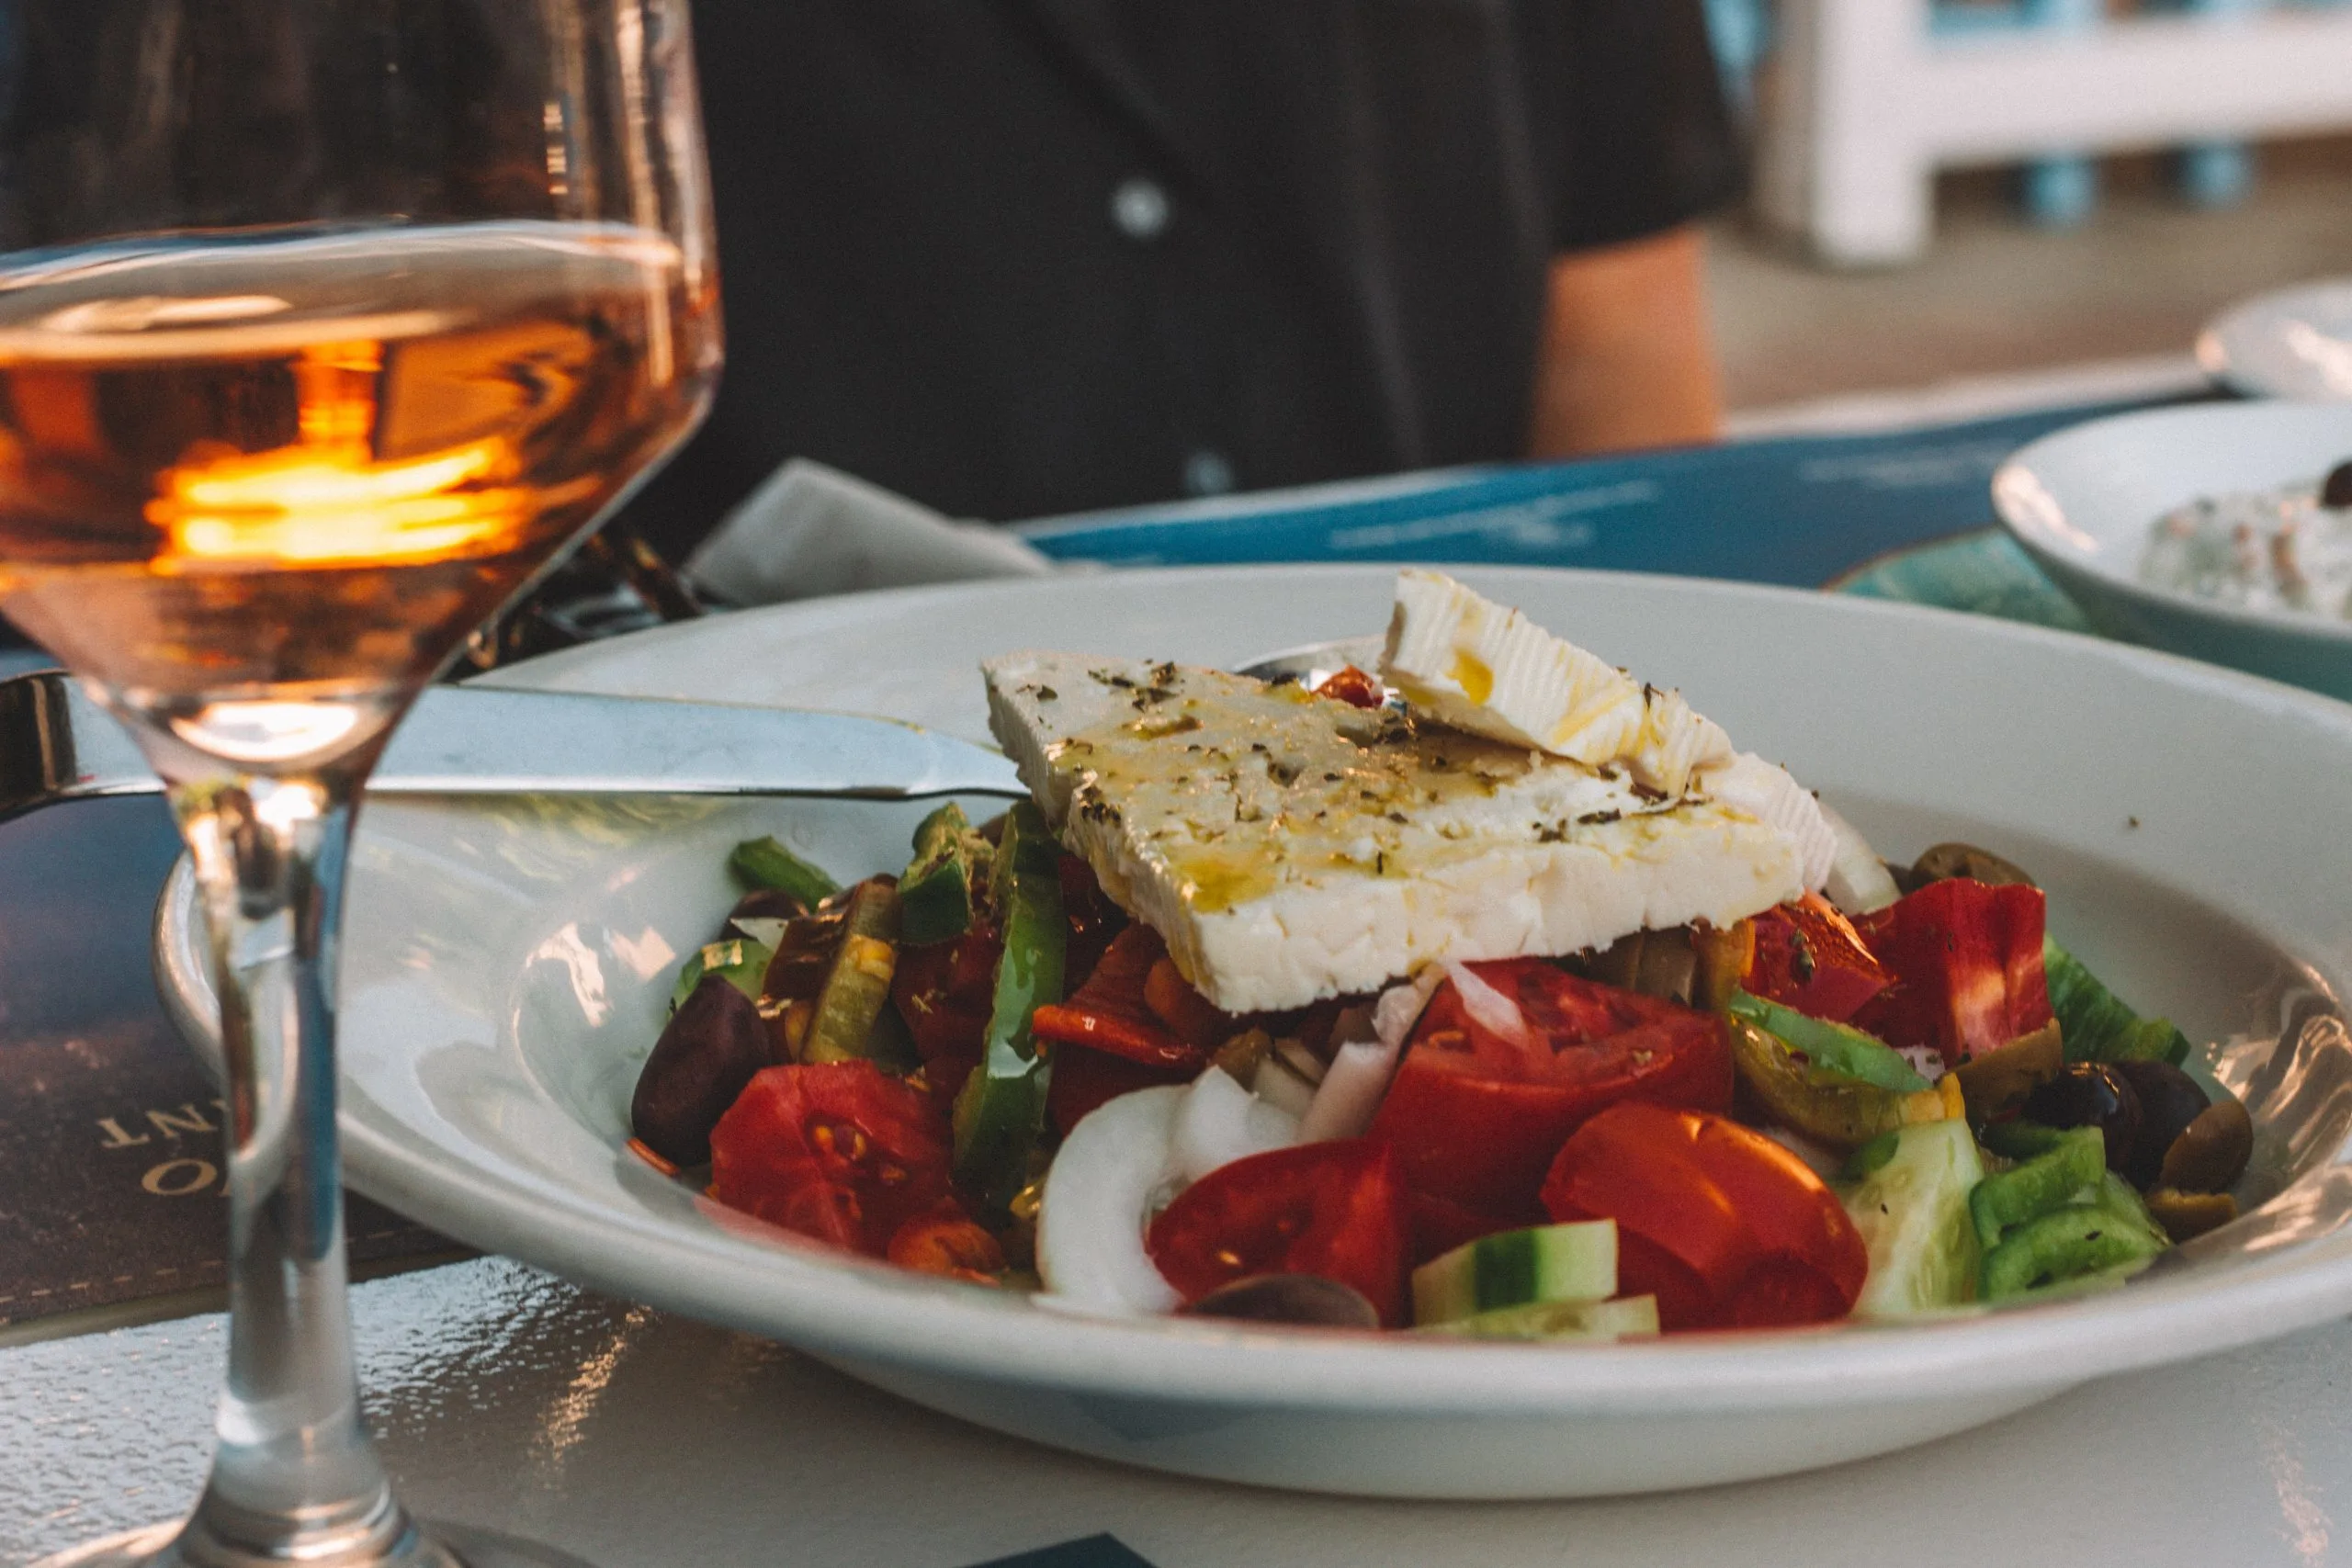 Greek salad, Greek Food, Greek Dishes, Greek cuisine, Food in Greece, traditional food in Greece, Greece desserts, Greece drinks